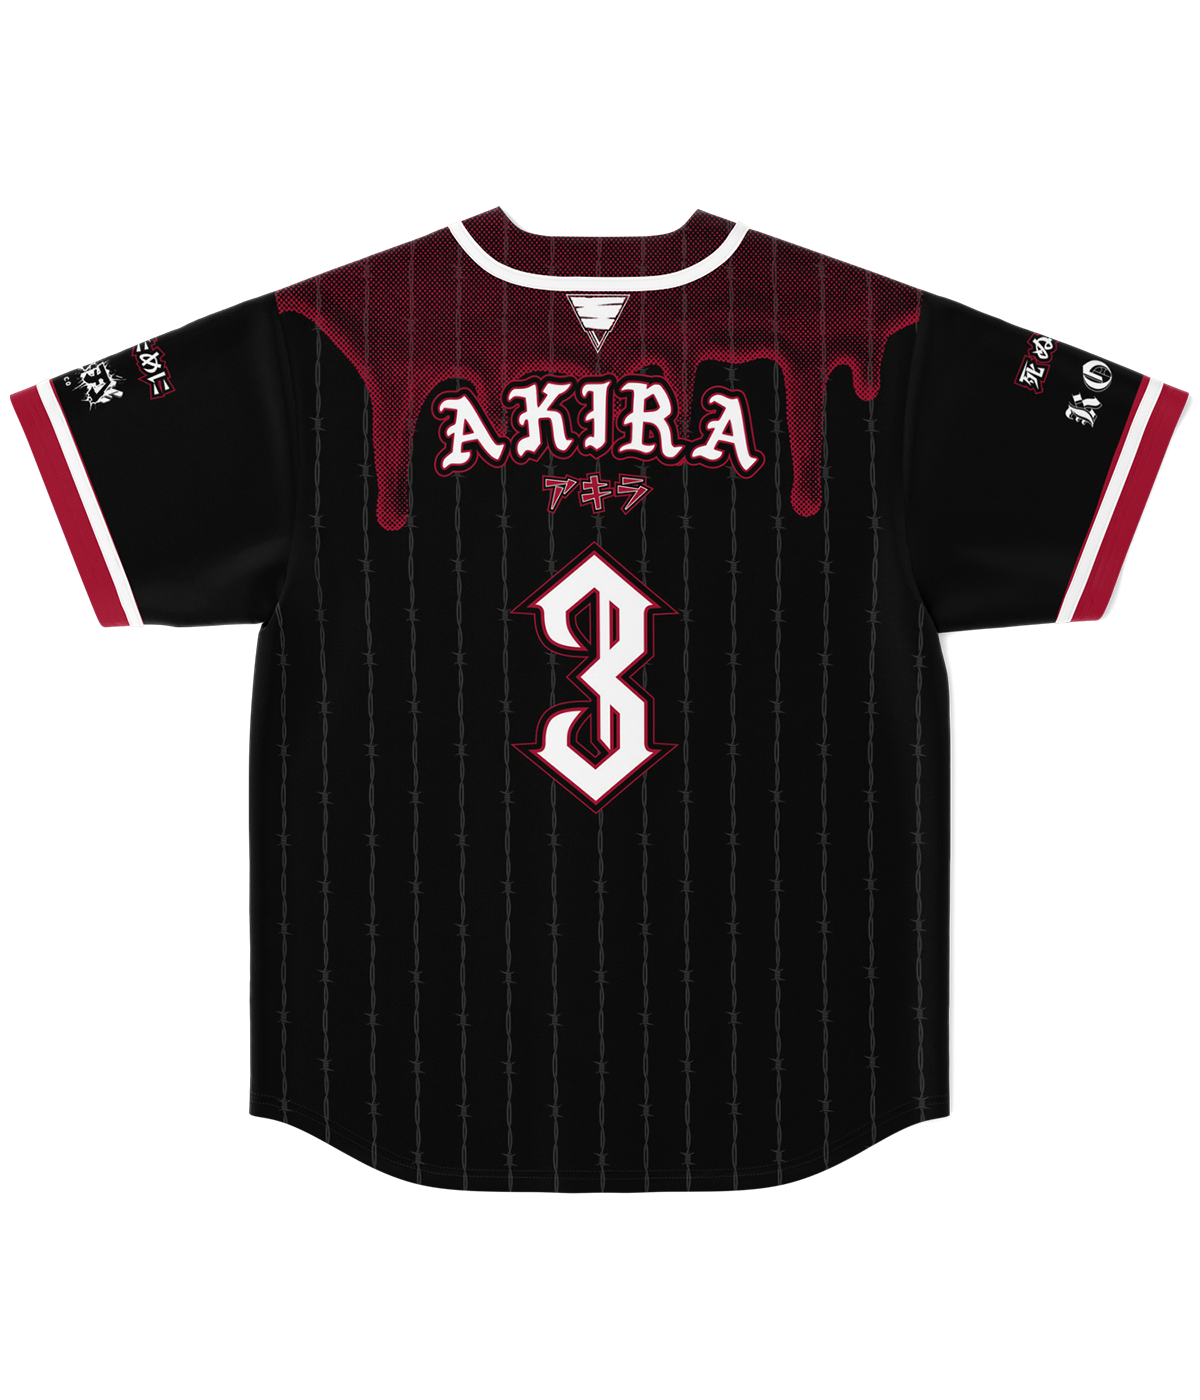 AKIRA - Baseball Jersey